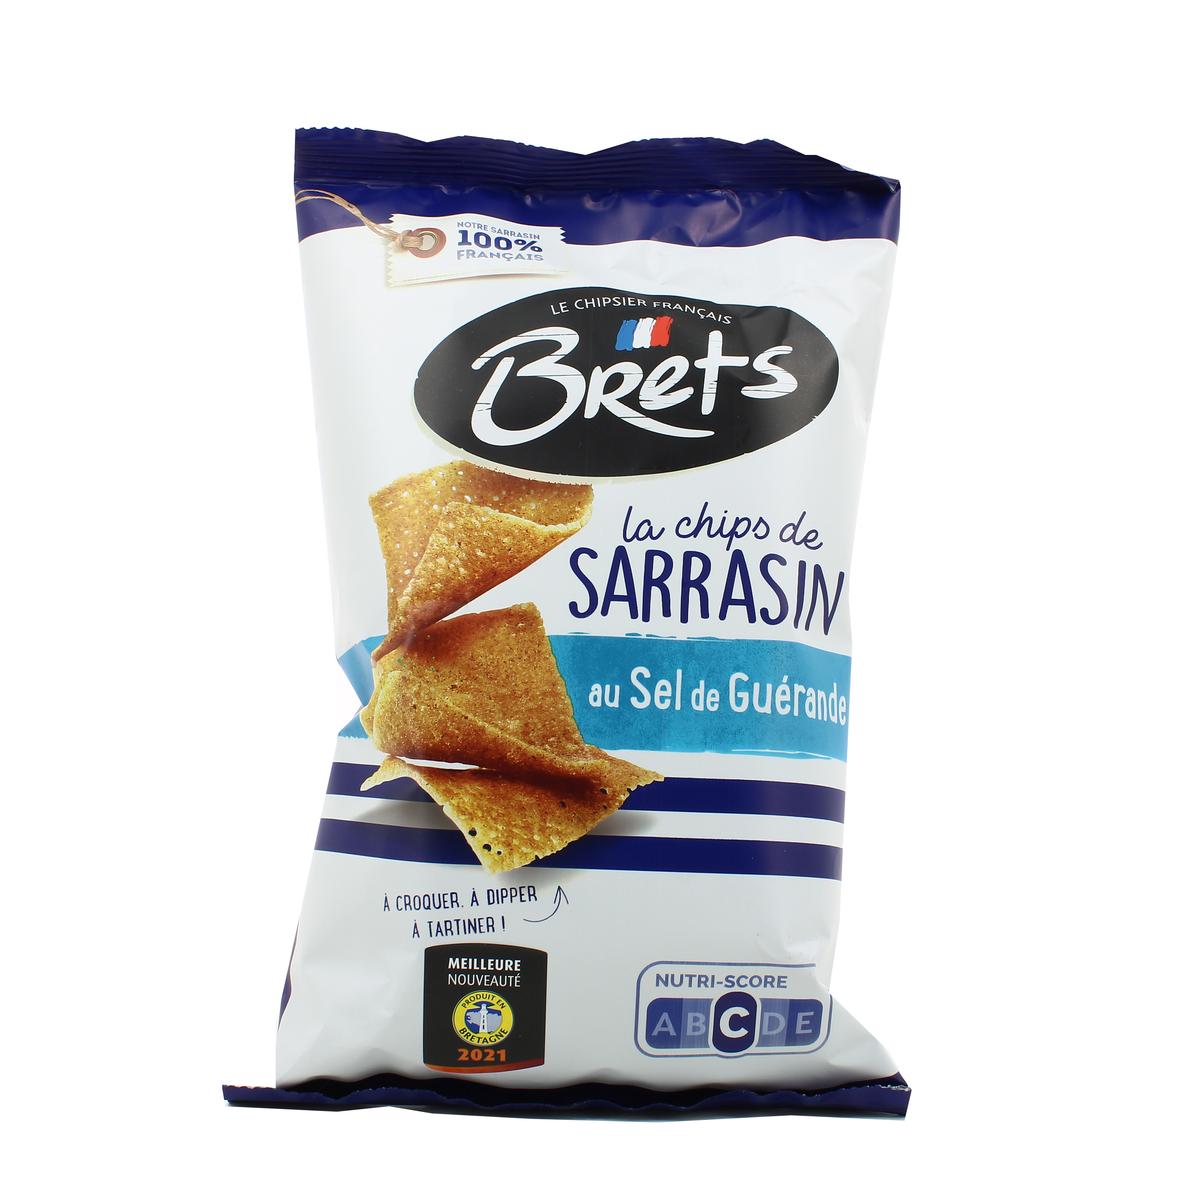 Bret's lance une (délicieuse) gamme de chips de sarrasin !